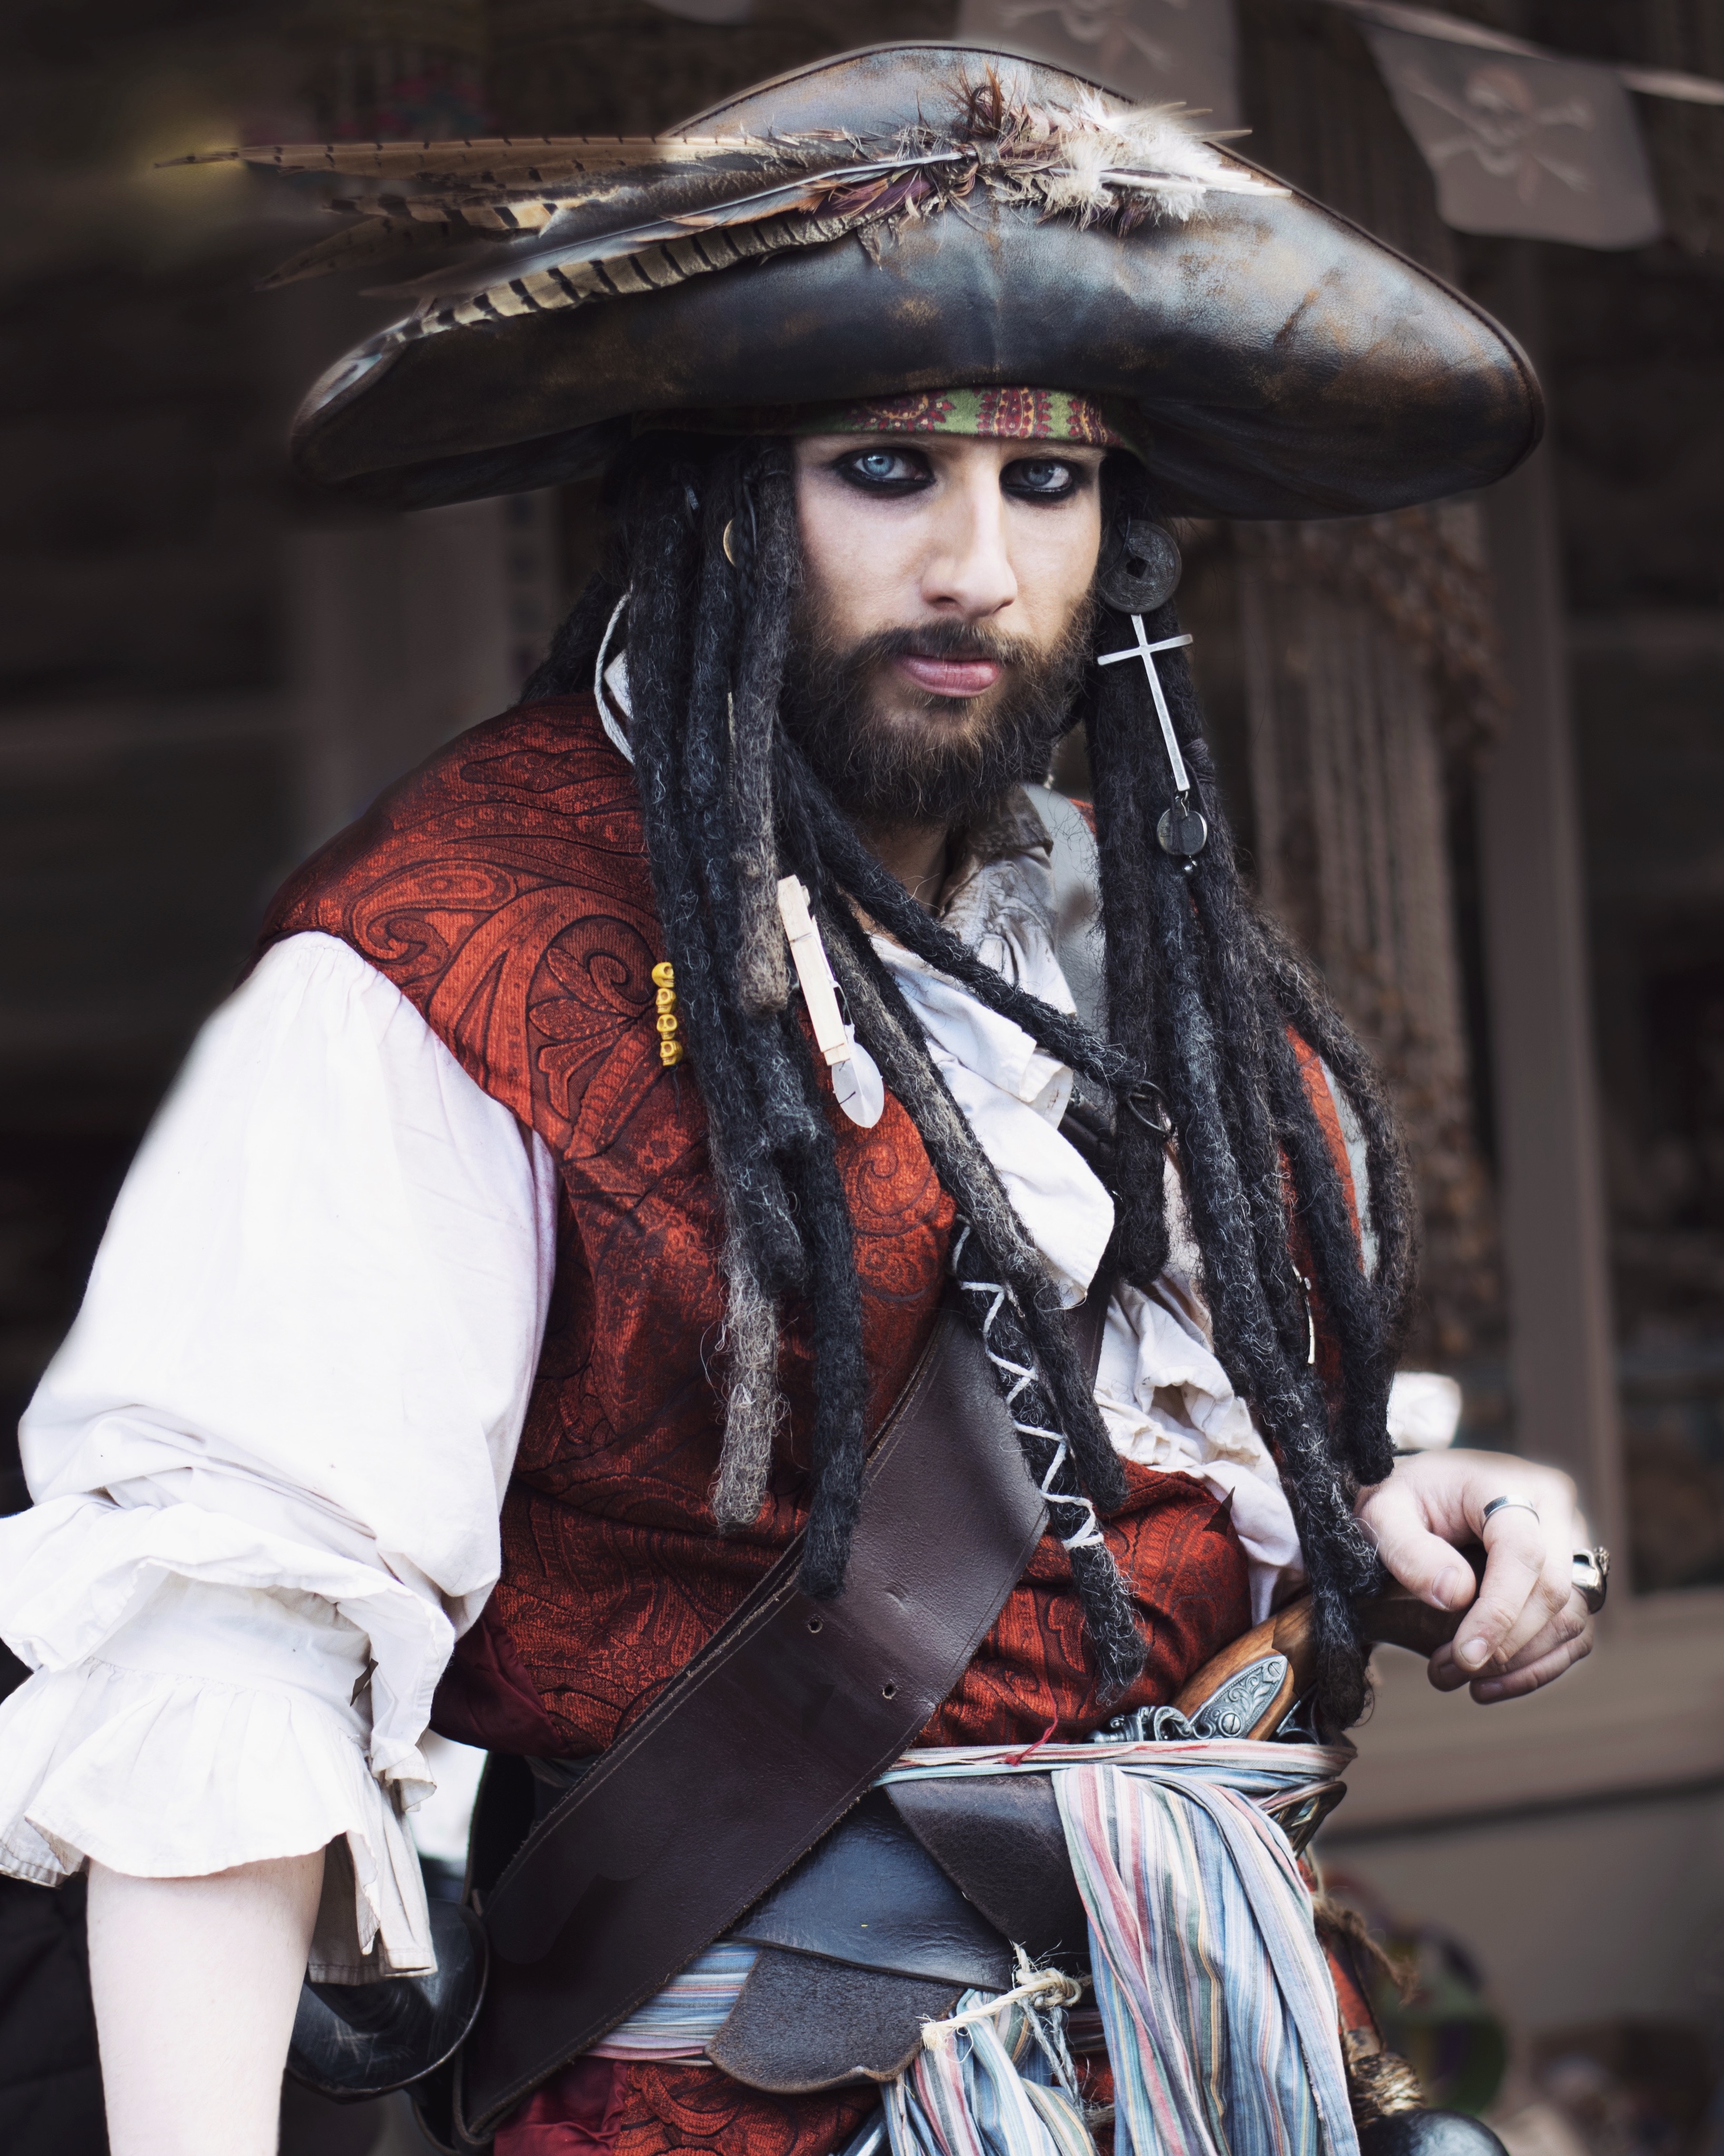 A Pirate